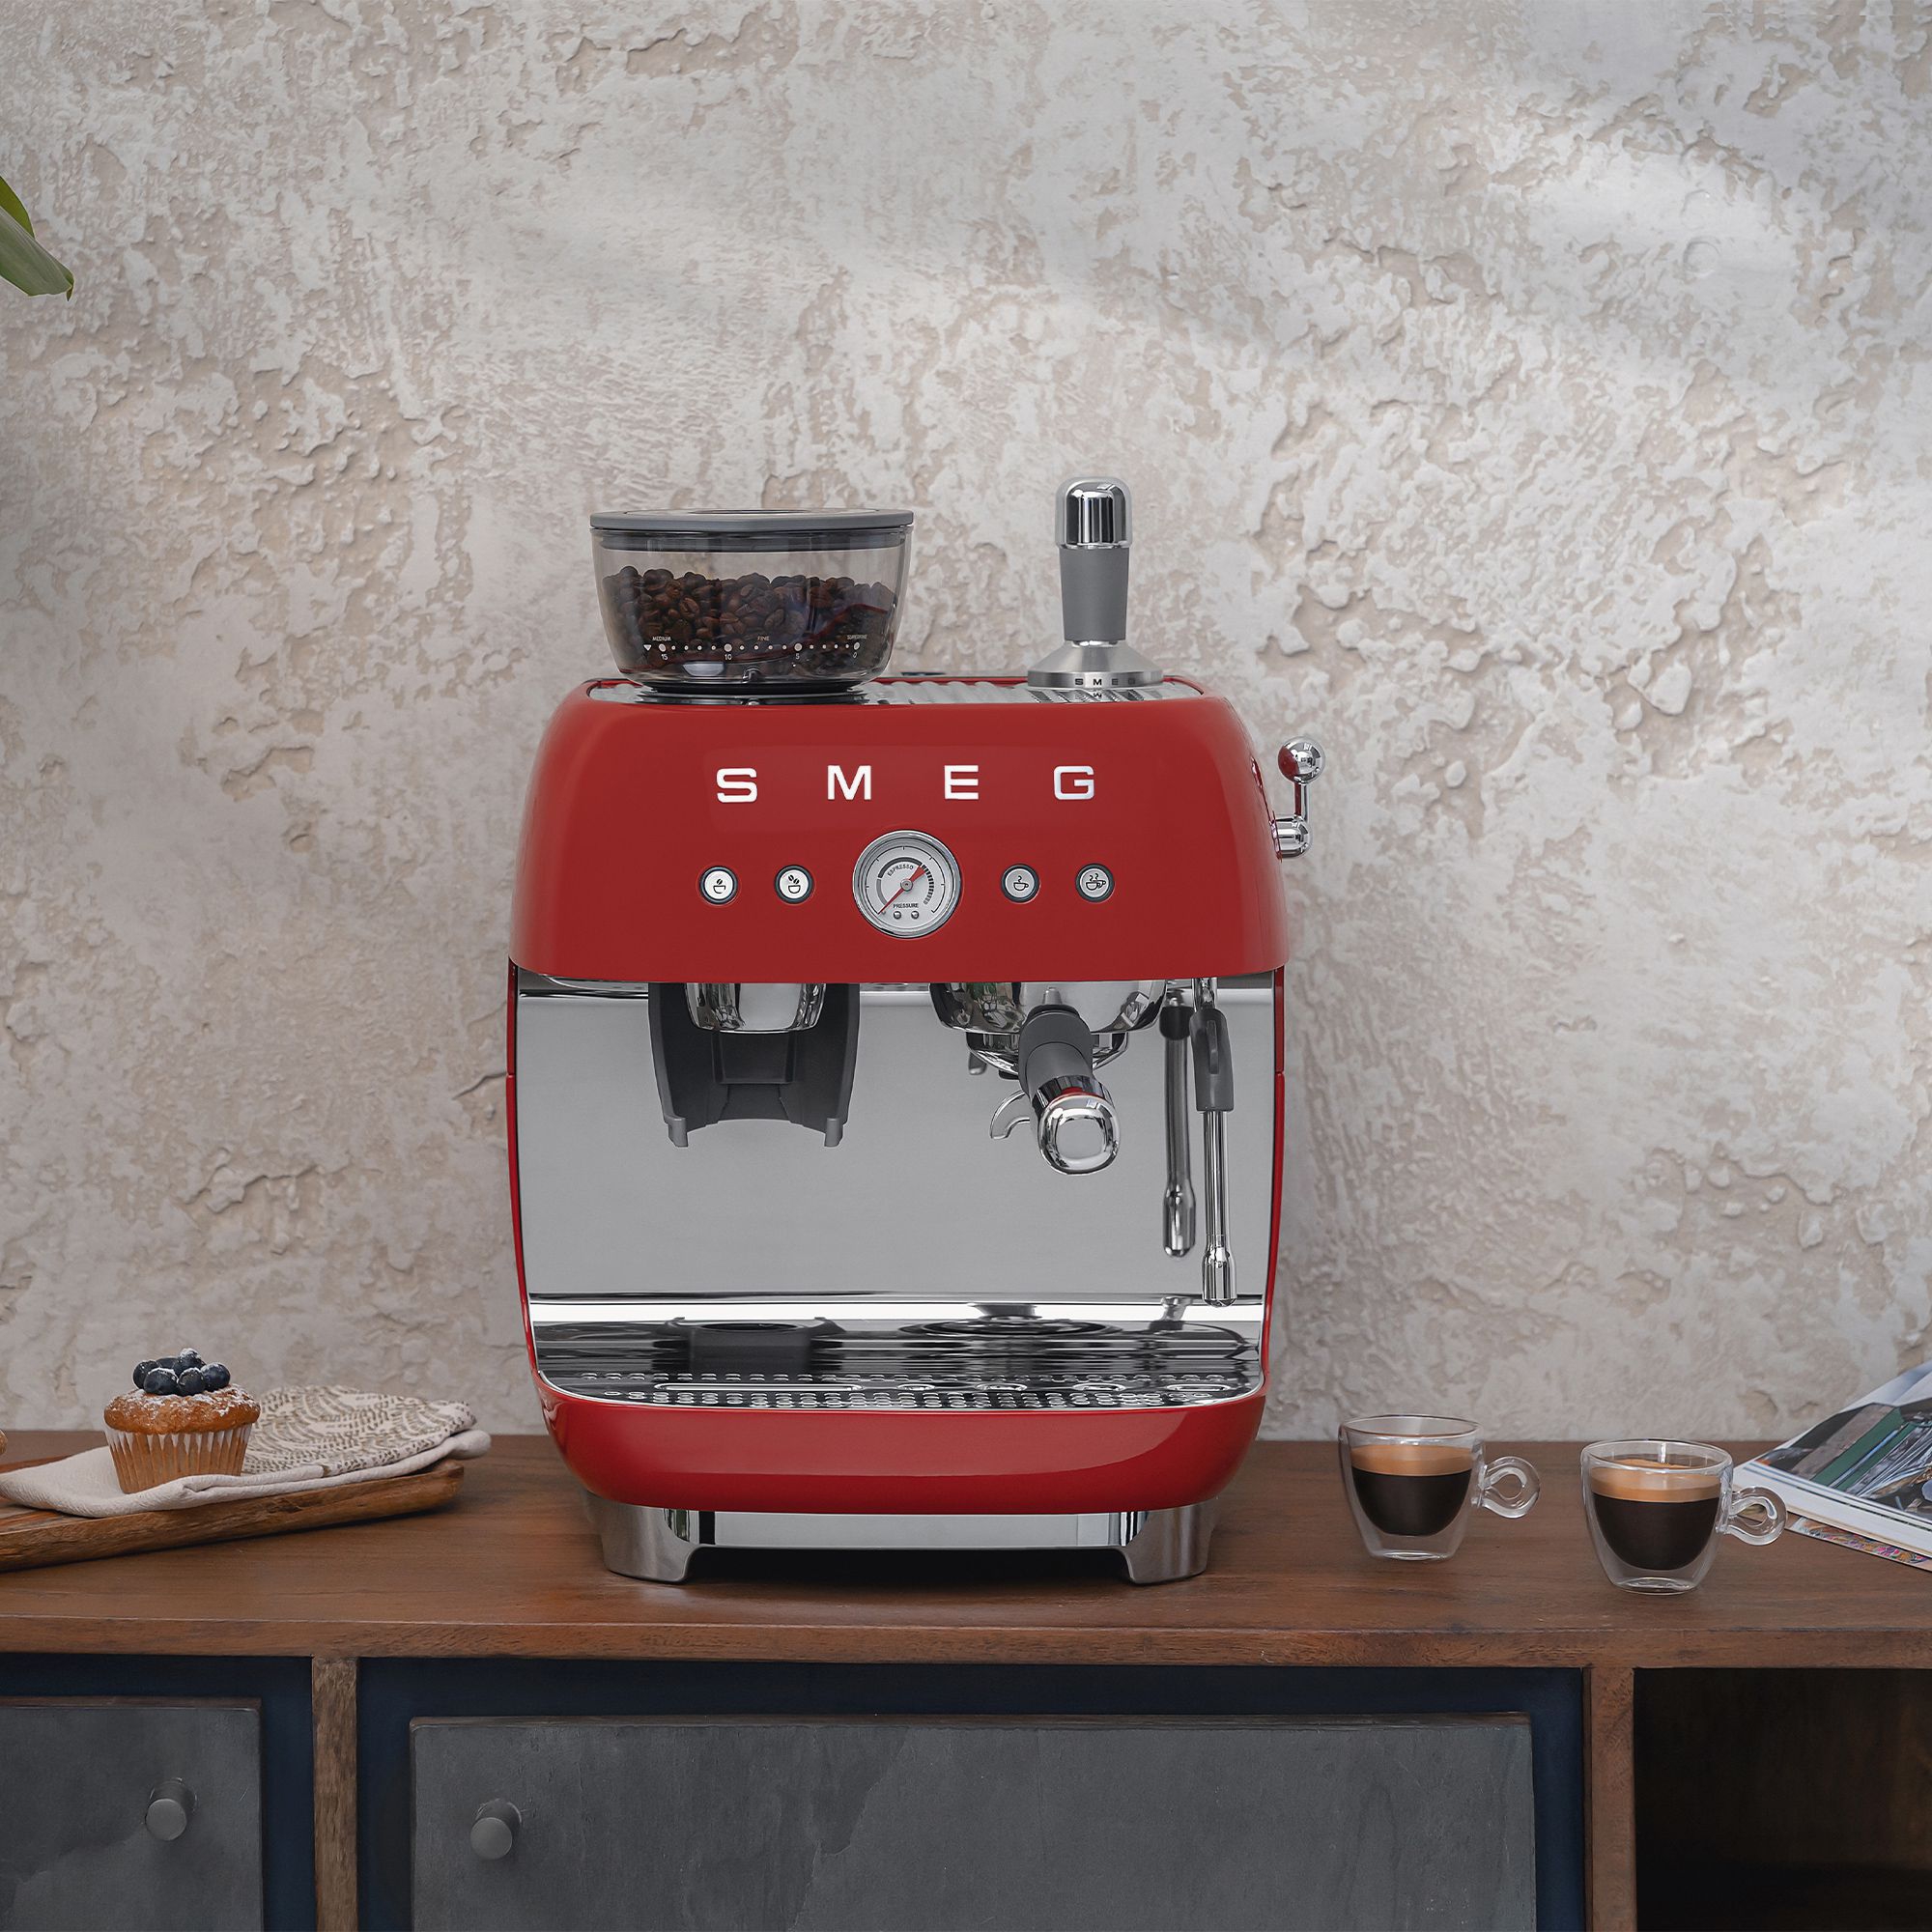 Smeg - Espresso machine with grinder - red